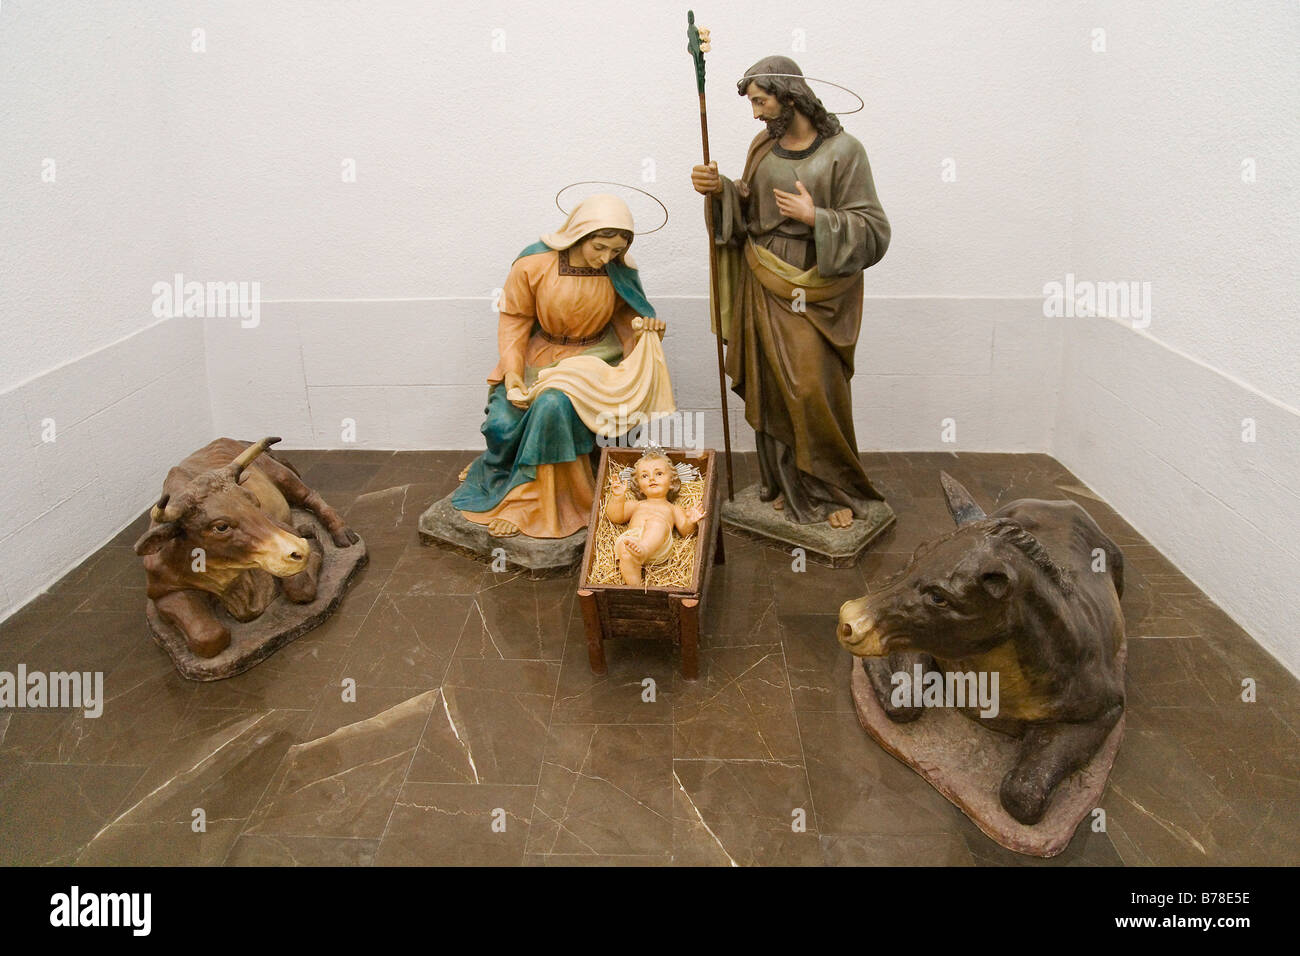 Scène de la nativité dans l'église de Peniscola, Costa Dorada, Espagne, Europe Banque D'Images